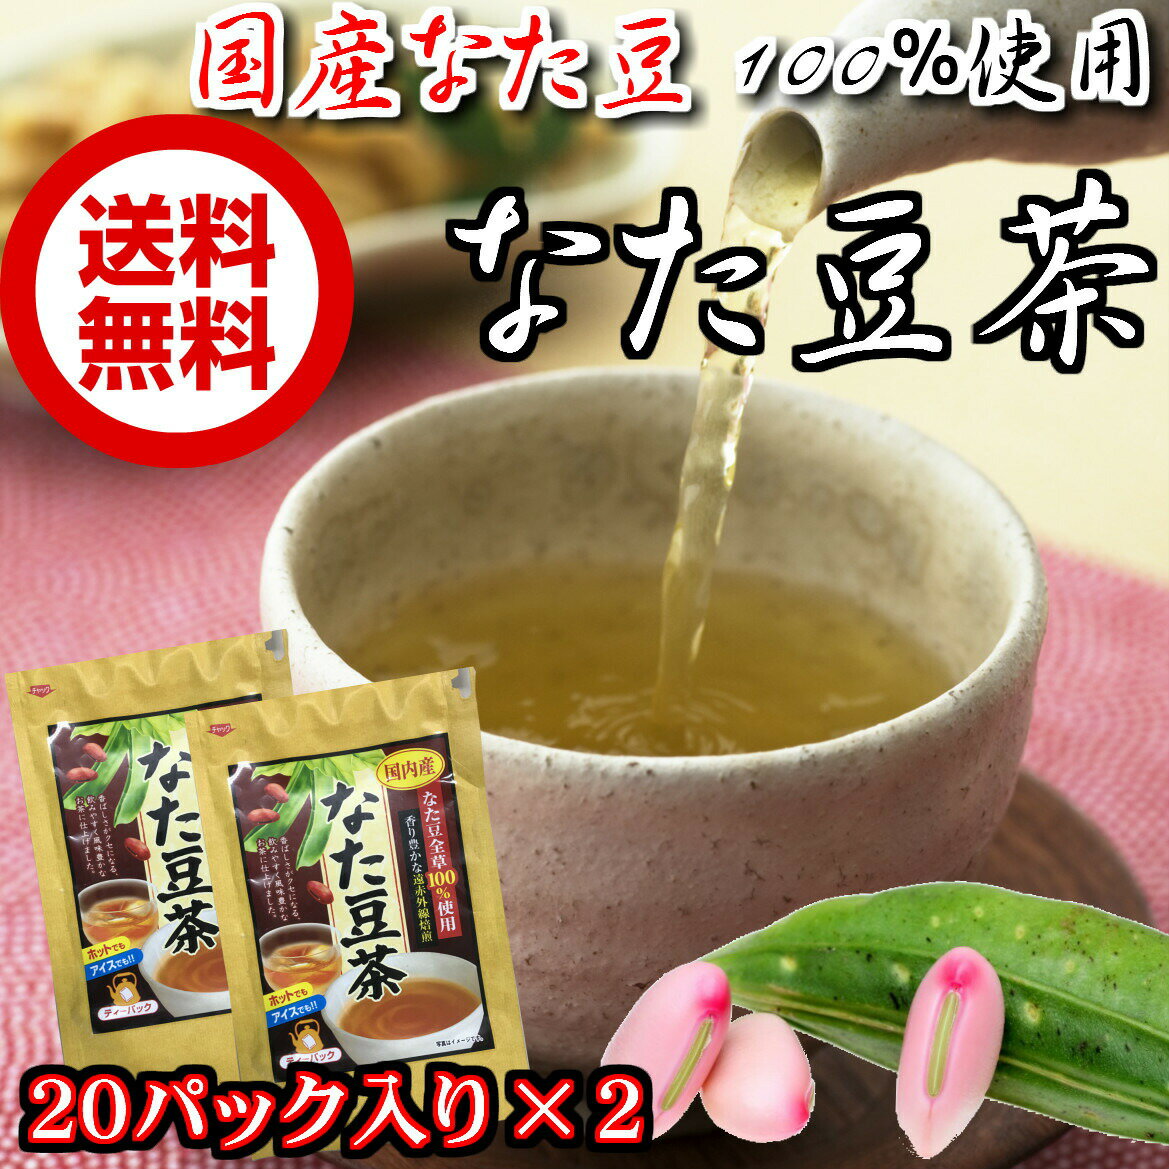 【兵庫県のお土産】お茶・紅茶